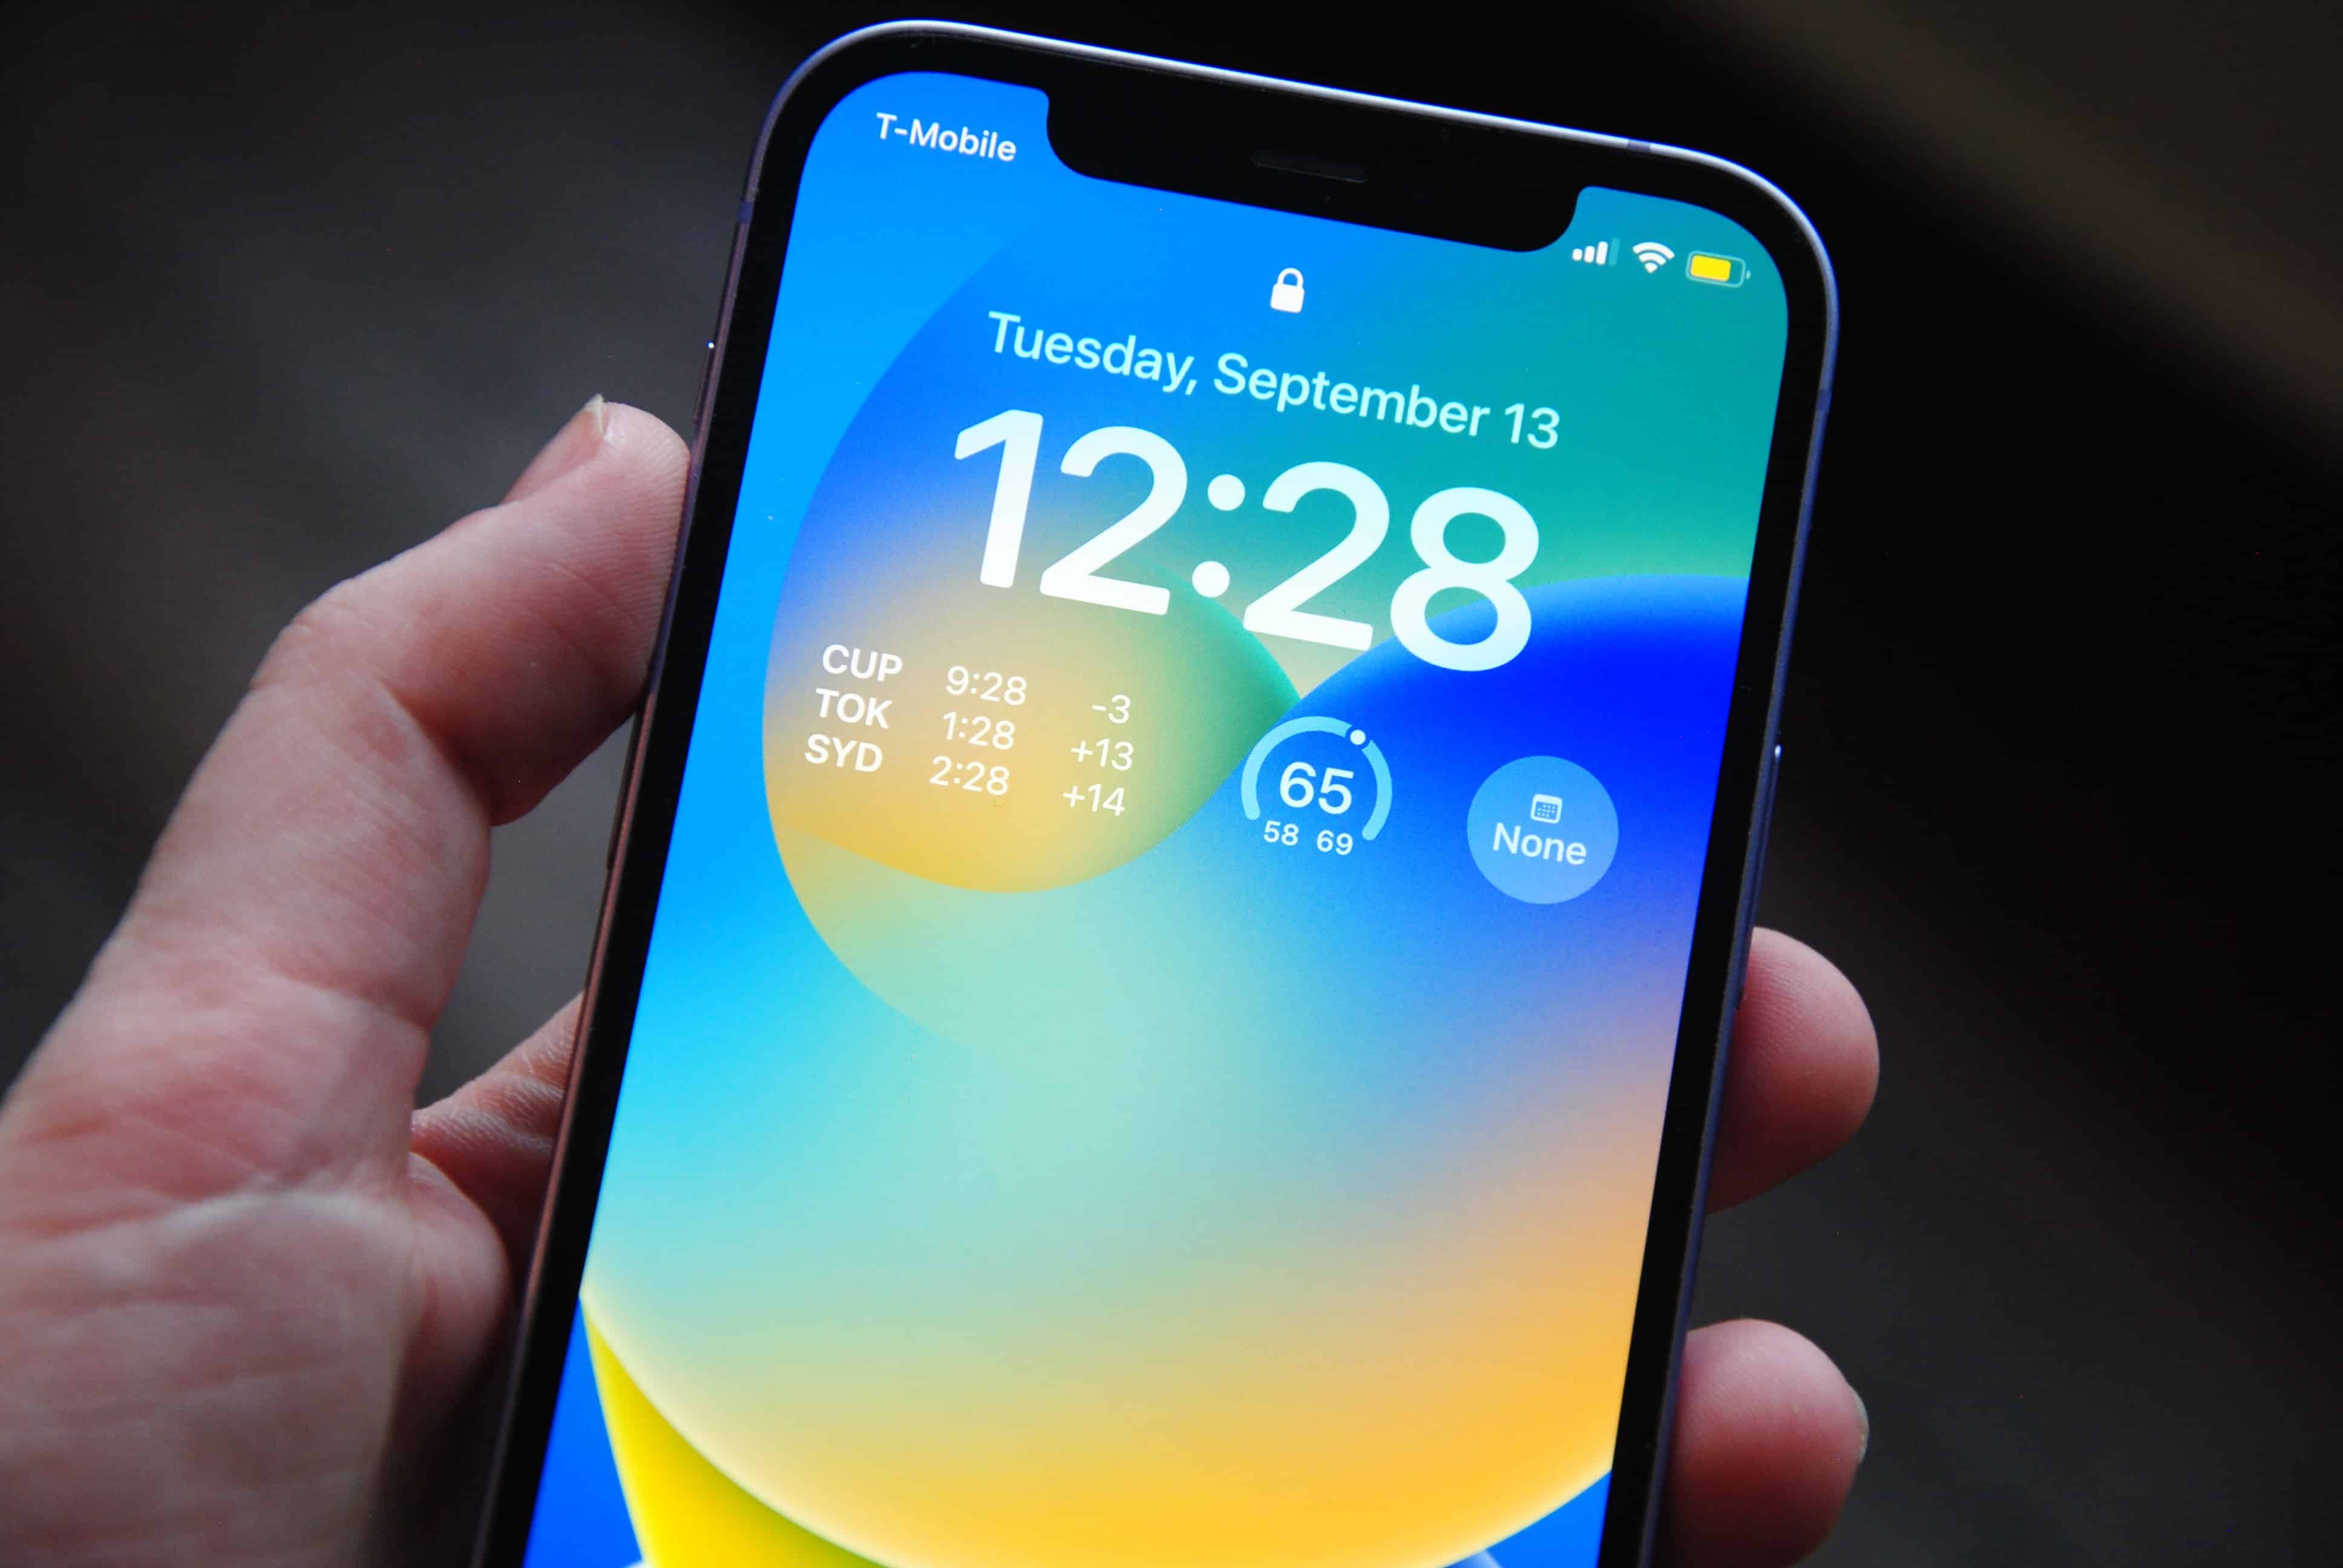 Samsung atualiza app do relógio com correções e mudanças visuais 